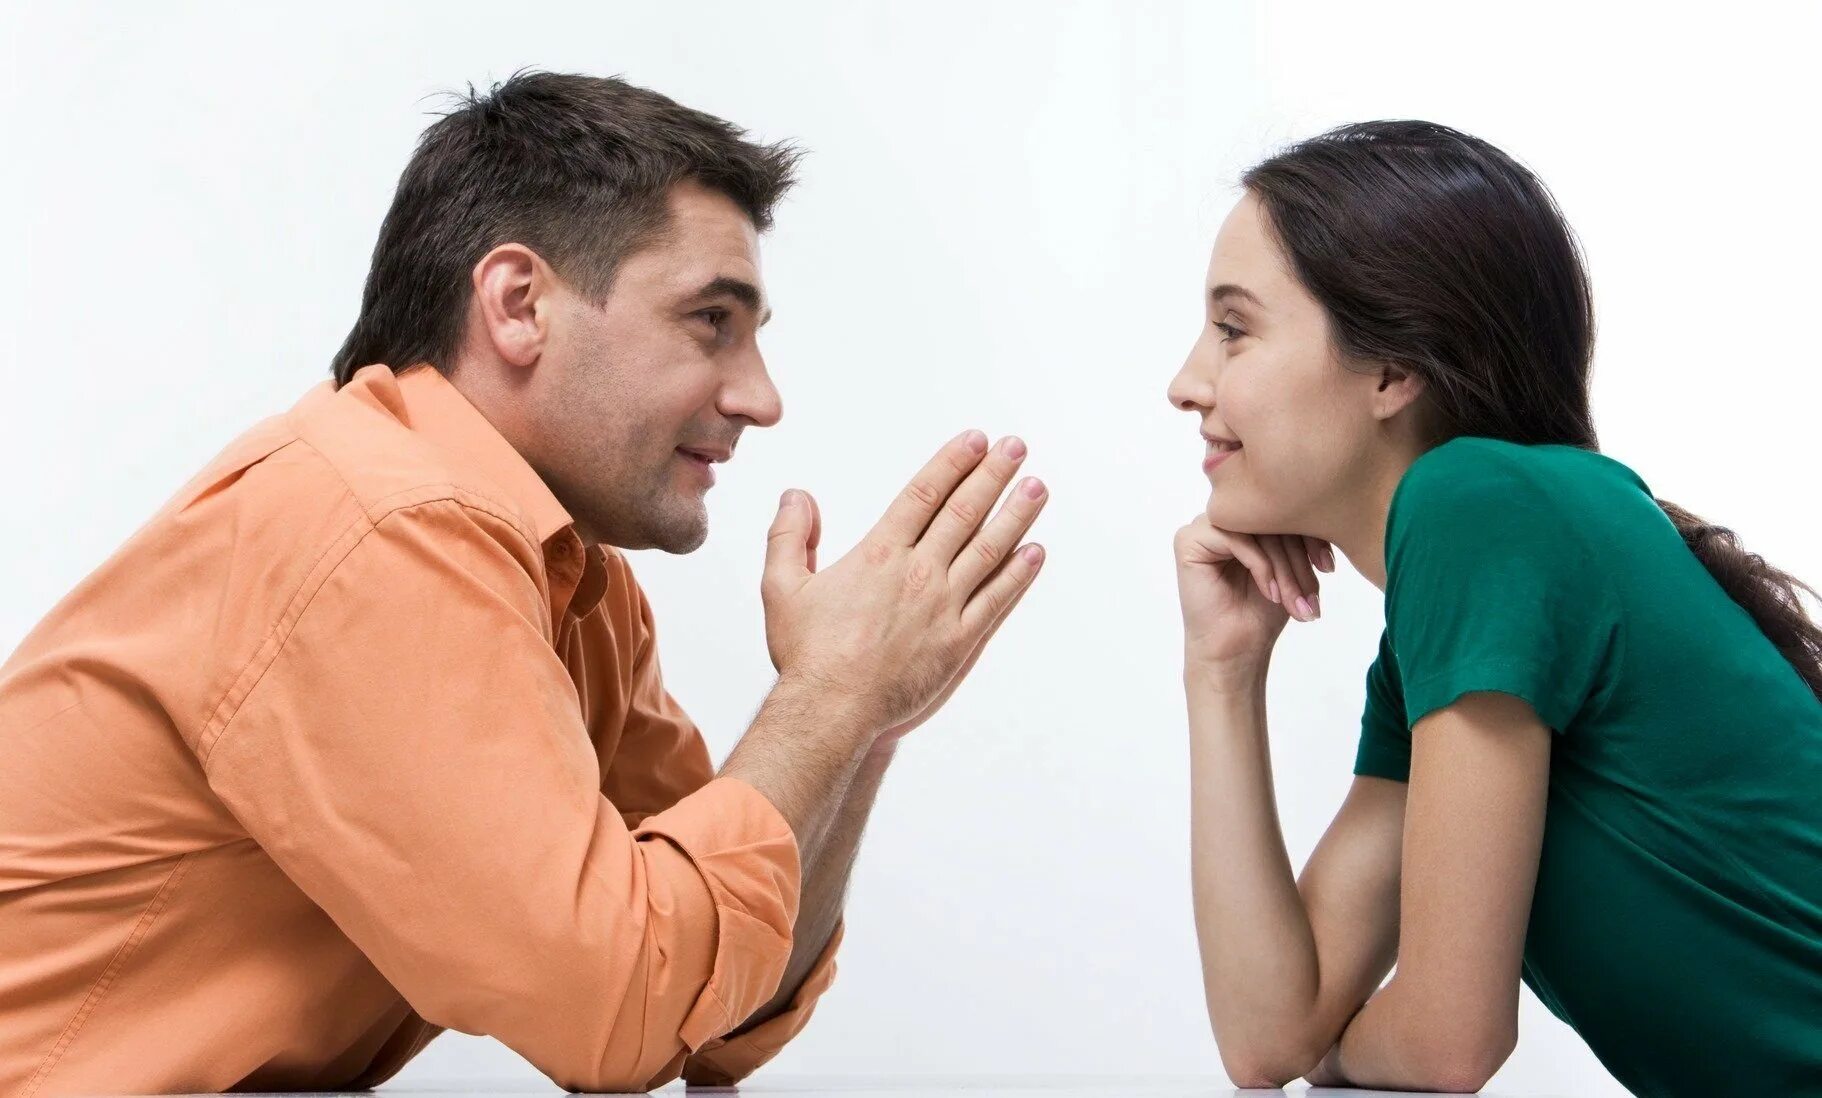 Мужчина просит время. Разговор между мужчиной и женщиной. Общение людей. Взаимопонимание в общении. Беседа мужчины и женщины.